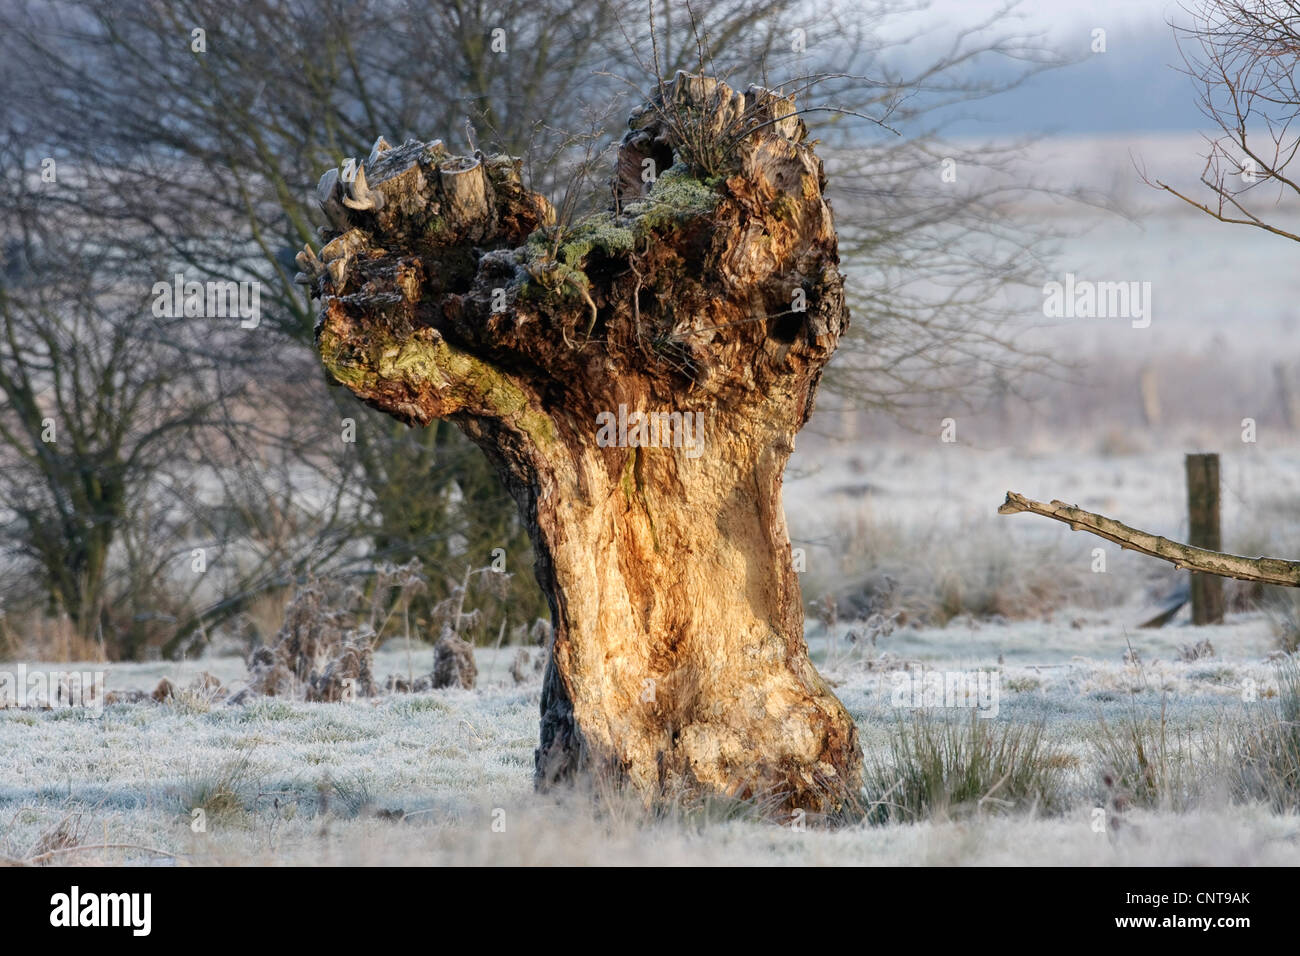 Le saule, l'osier (Salix spec.), les restes d'un vieux saules étêtés dans un paysage d'hiver, Allemagne Banque D'Images